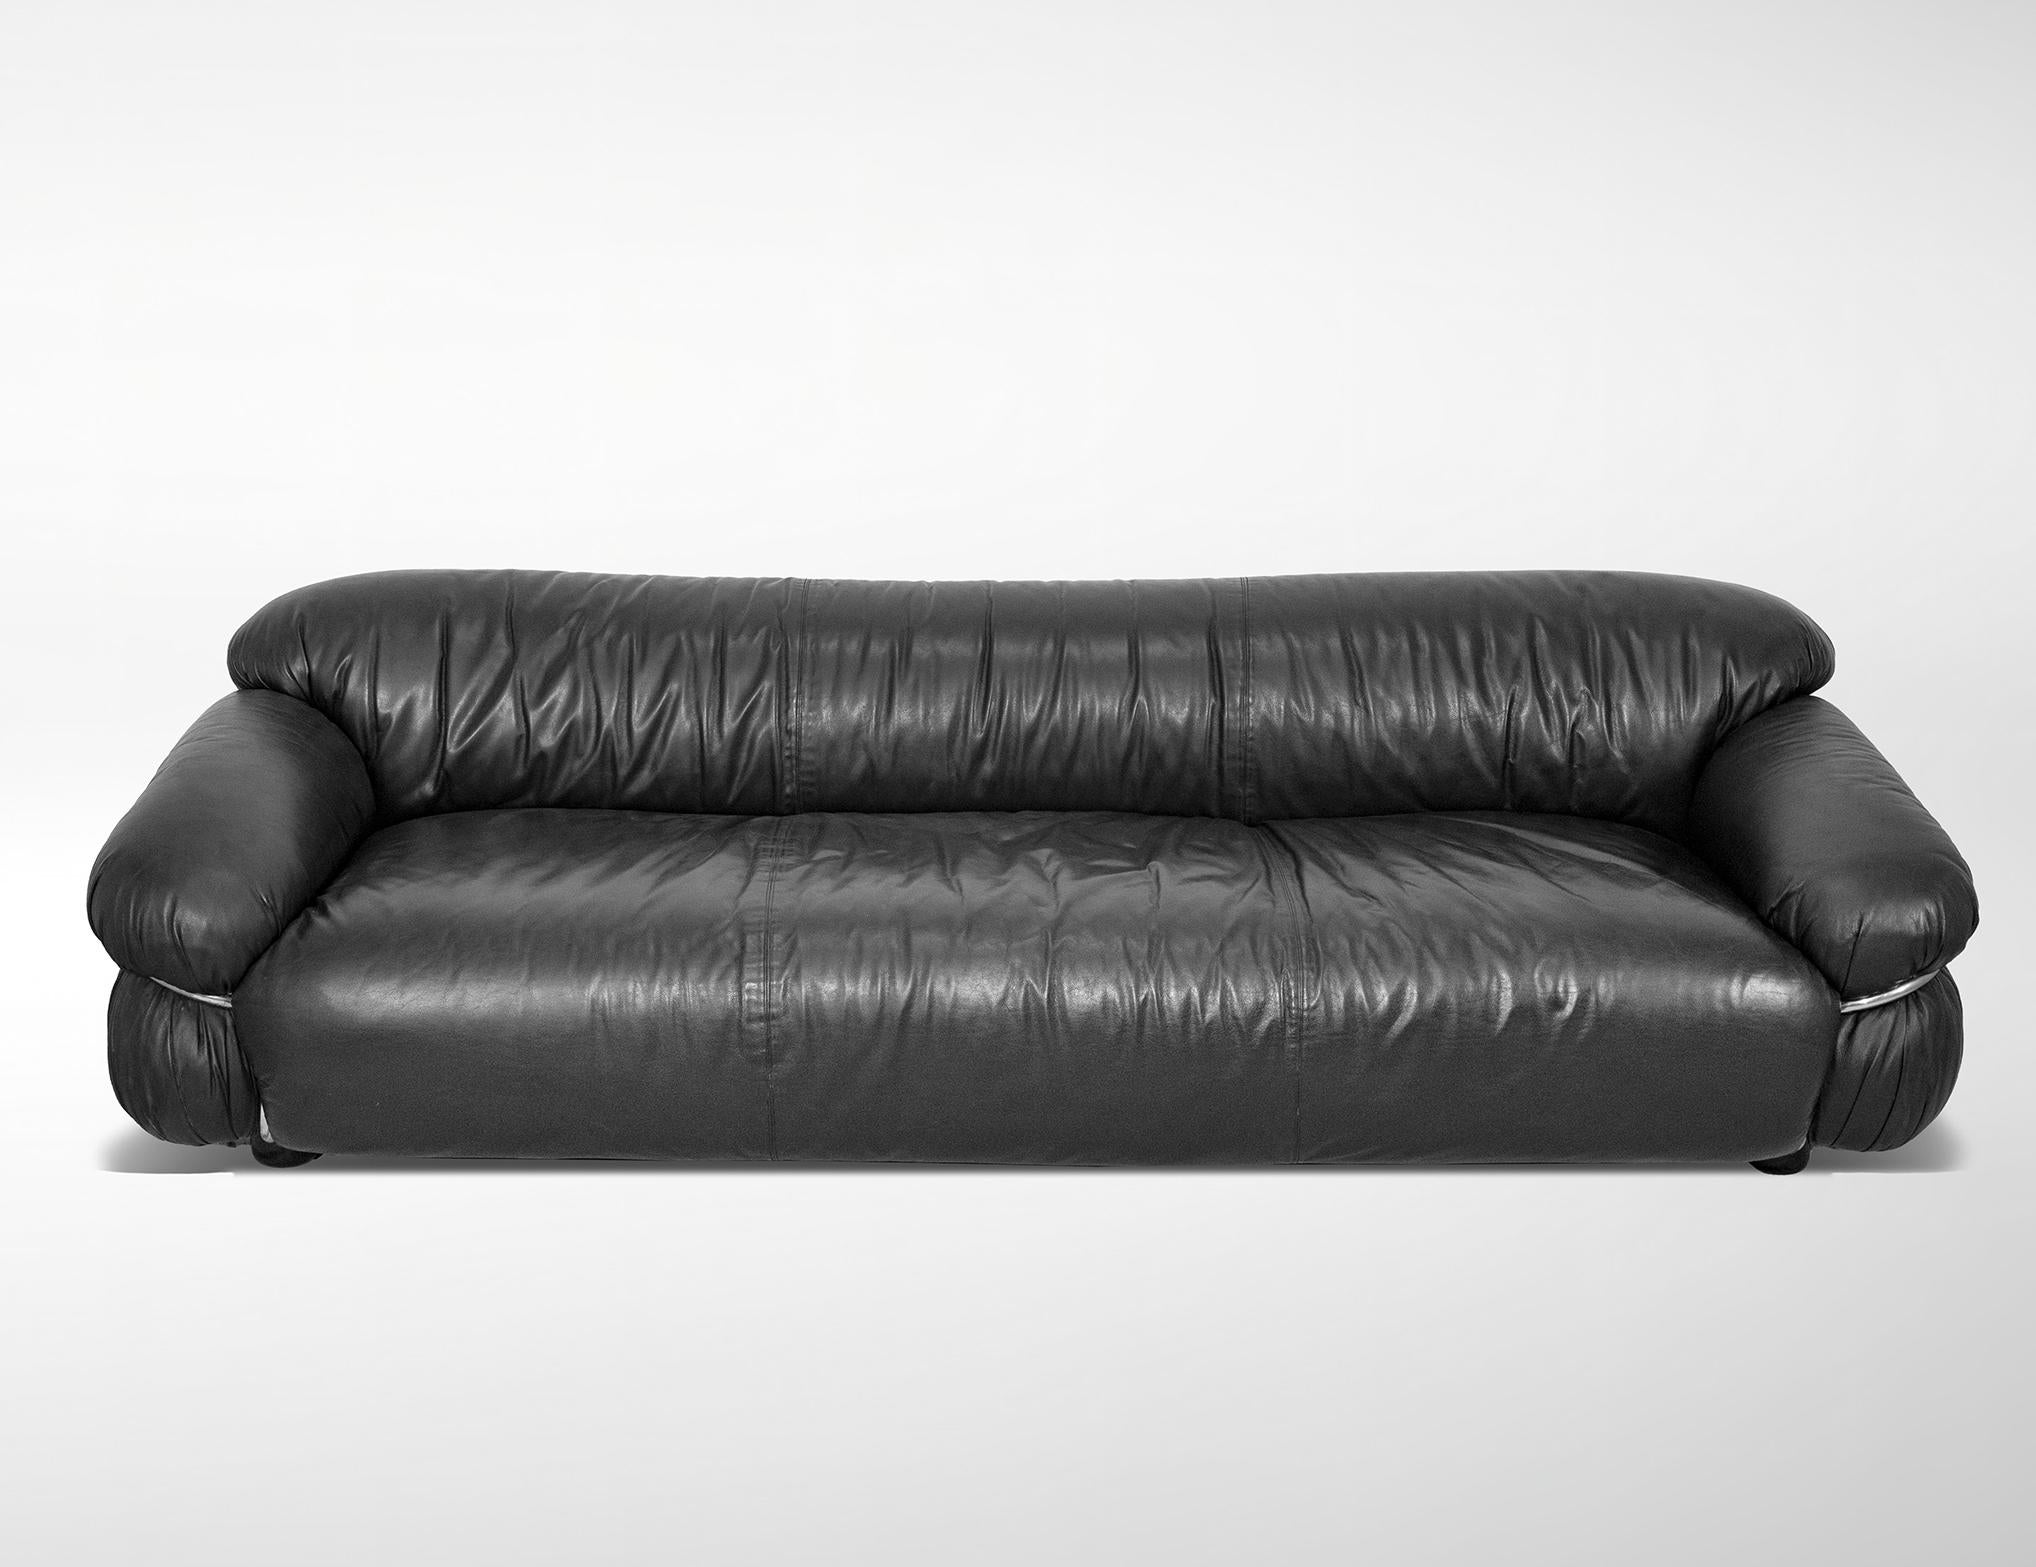 Dreisitziges Sofa, entworfen von Gianfranco Frattini für Cassina, 1969.
Original-Label des Herstellers.
Schwarzes Leder, ausgezeichneter Zustand.
Referenz Giuliana Gramigna, 